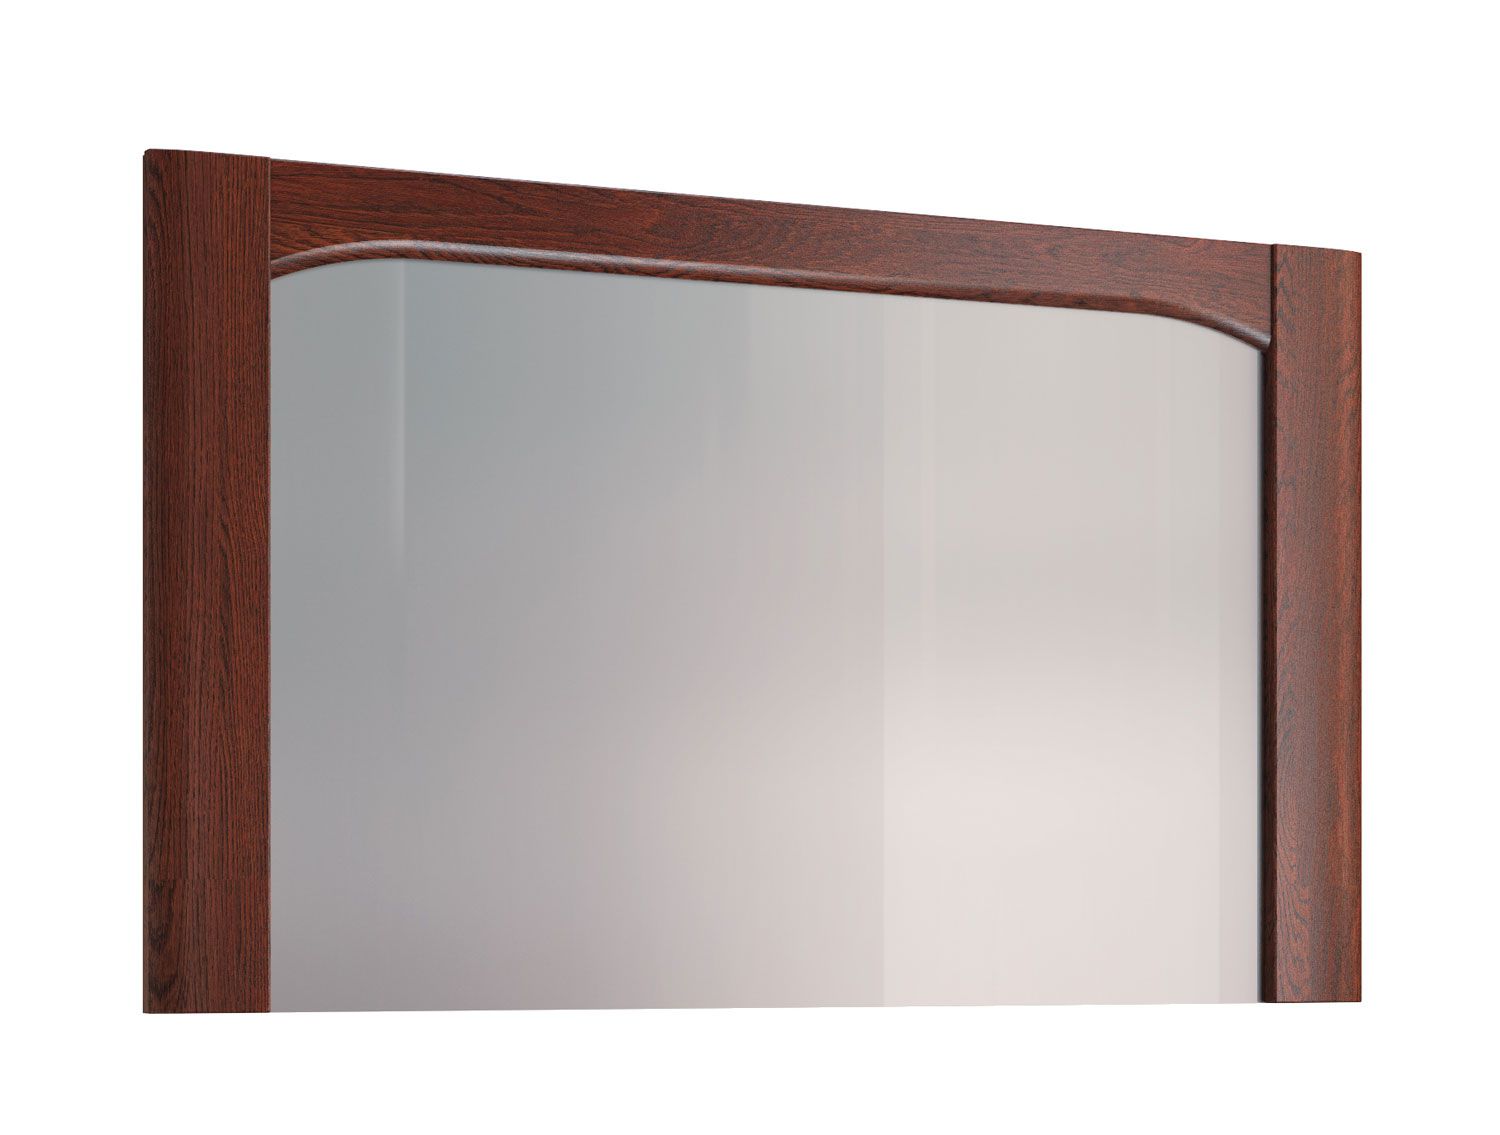 Eenvoudige spiegel met houten lijst Krasno 35, massief eiken, afmetingen: 70 x 115 x 4 cm, perfect voor de kaptafel